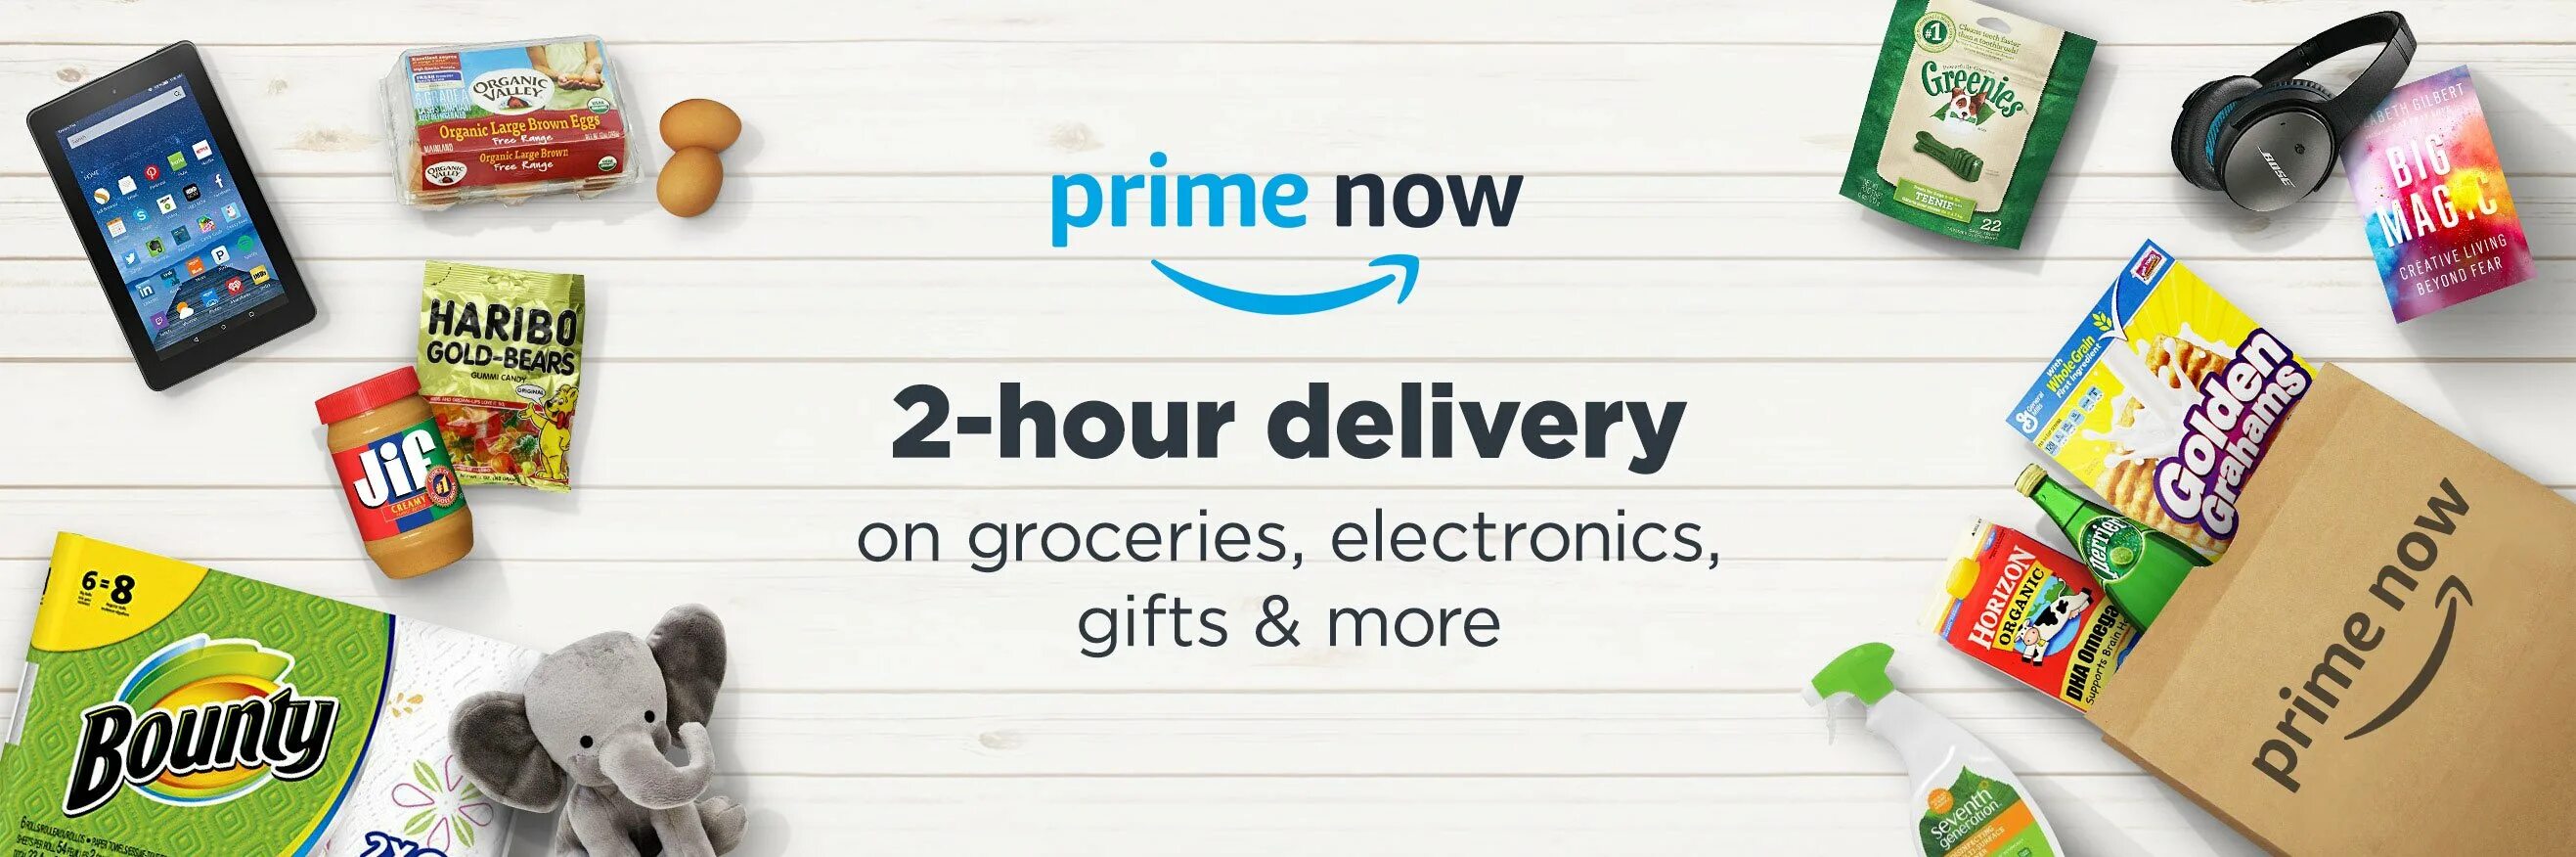 Amazon prime купить. Prime Now. Amazon Prime Now. Amazon доставка лого. Amazon Prime промокоды Геншин.